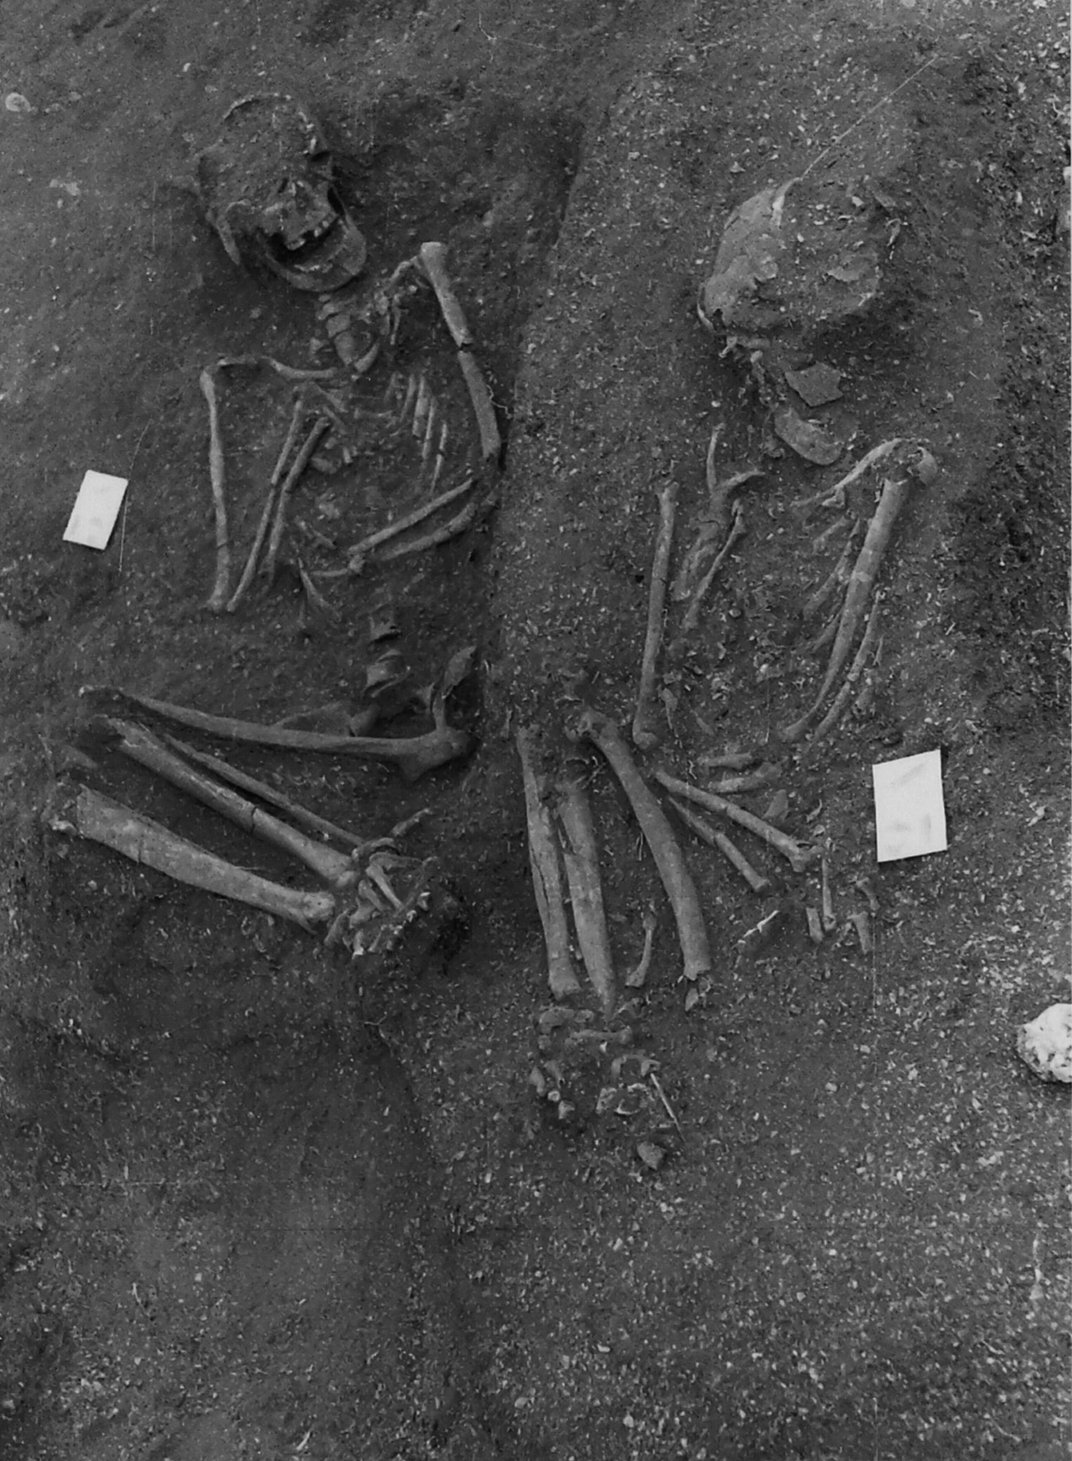 imagen en blanco y negro de dos esqueletos en posiciones fetales medio enterrados en sedimentos en el sitio de excavación